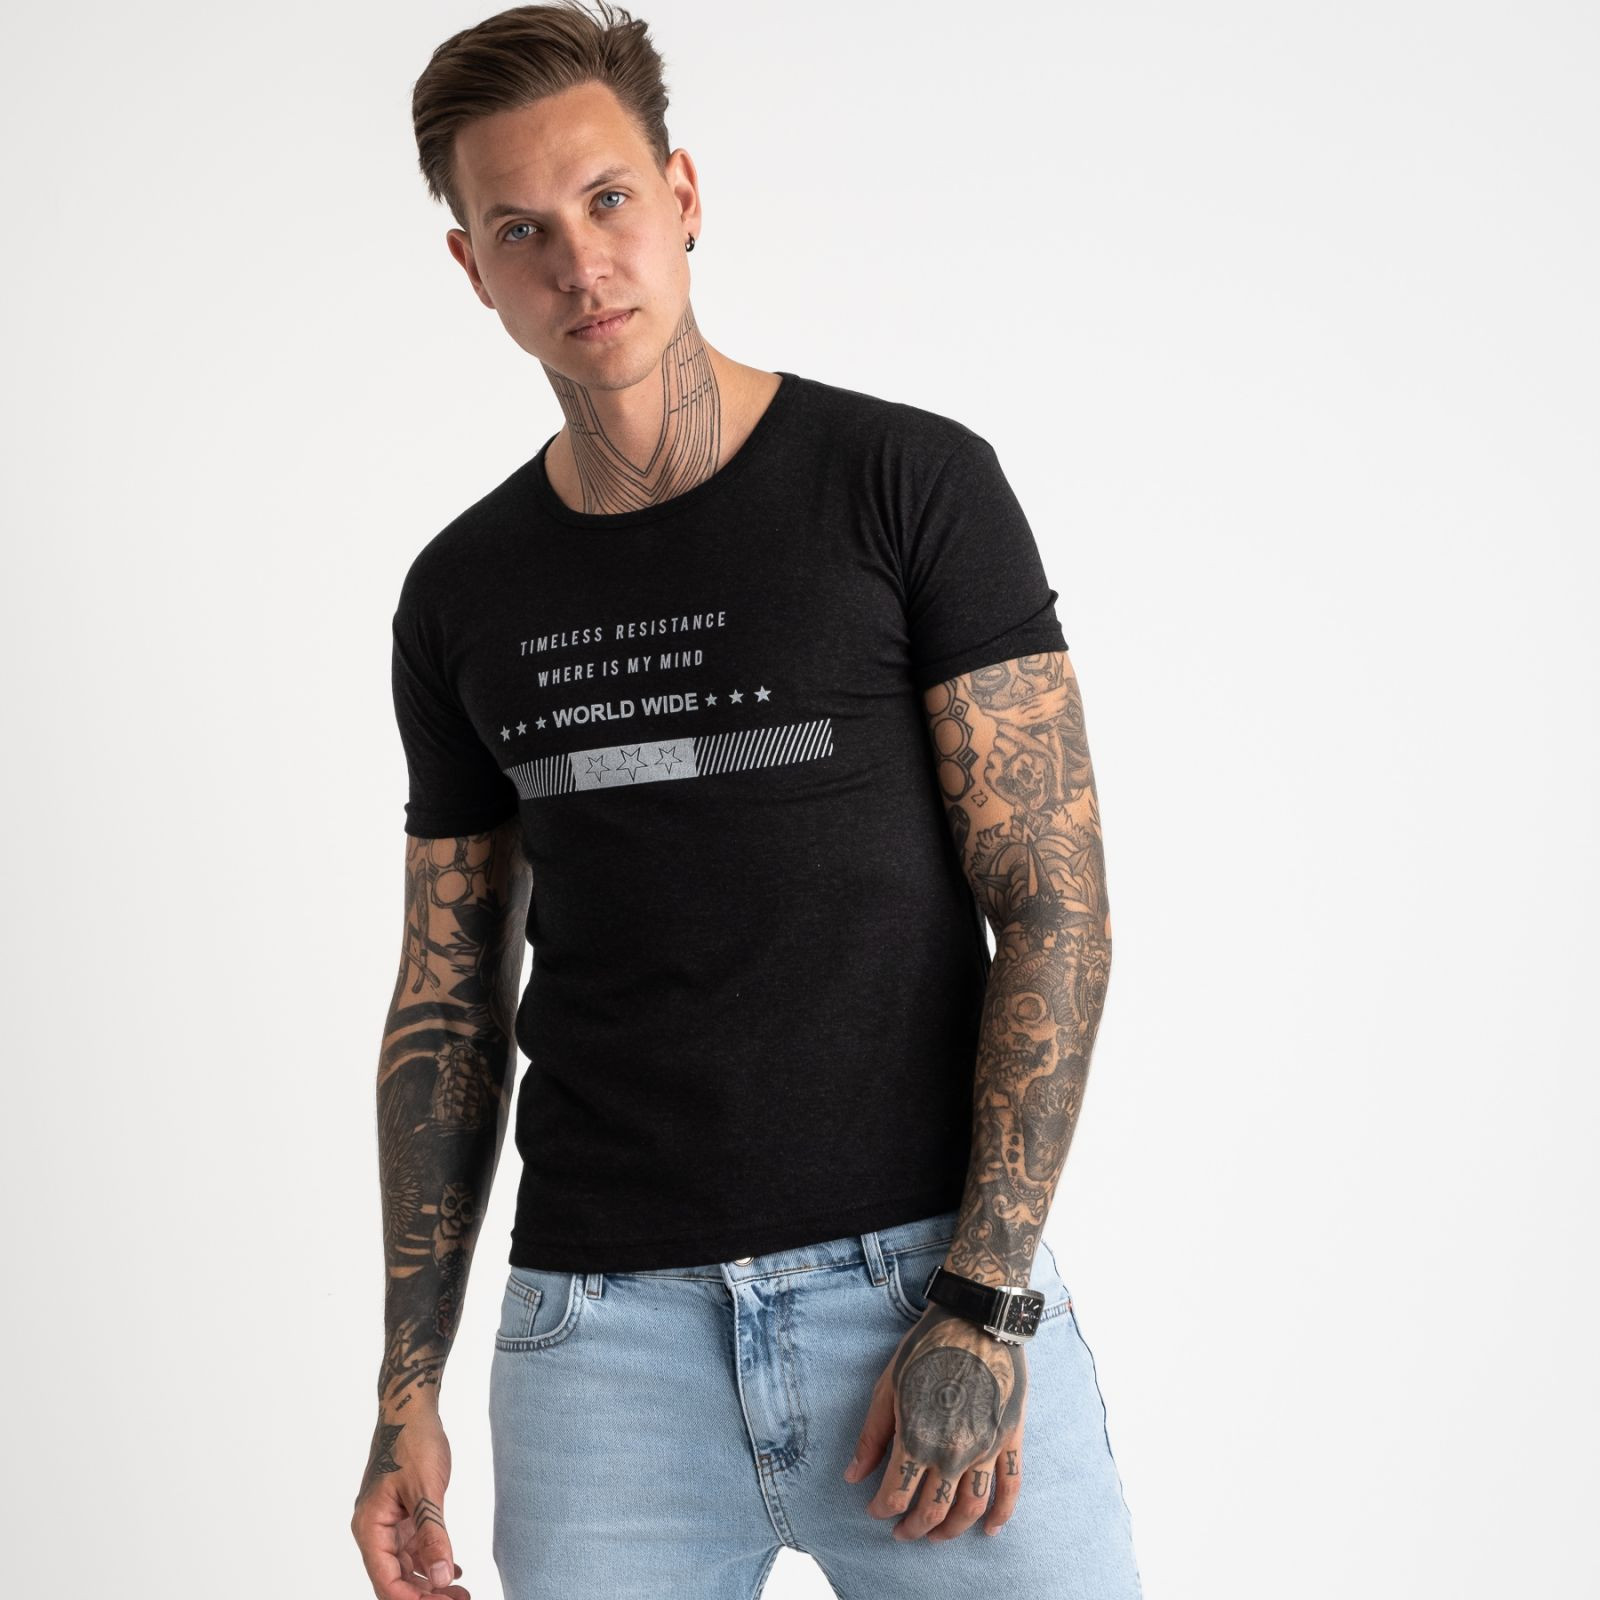 2619-16 темно-серая футболка мужская с принтом (4 ед. размеры: M.L.XL.2XL)